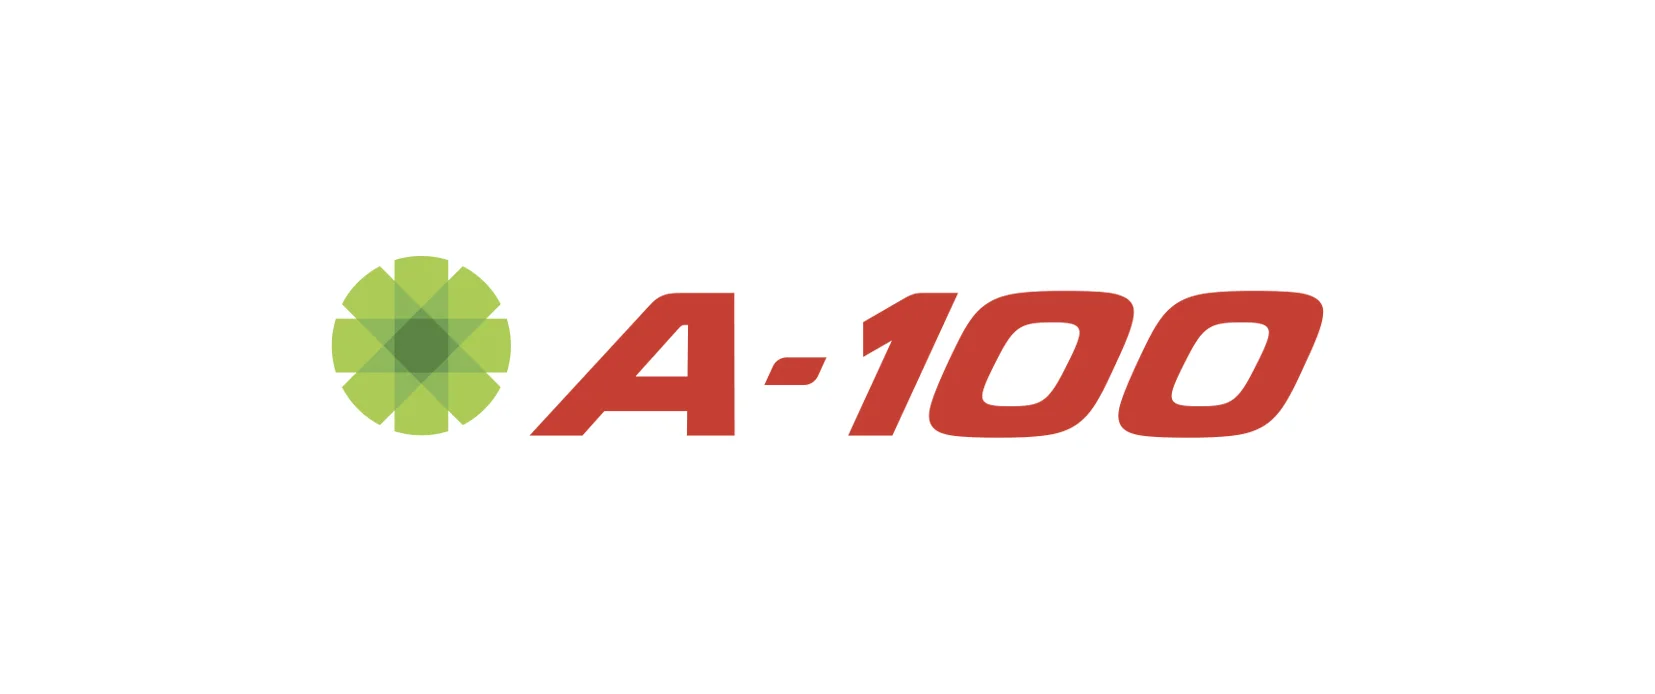 А-100 - сеть автозаправок